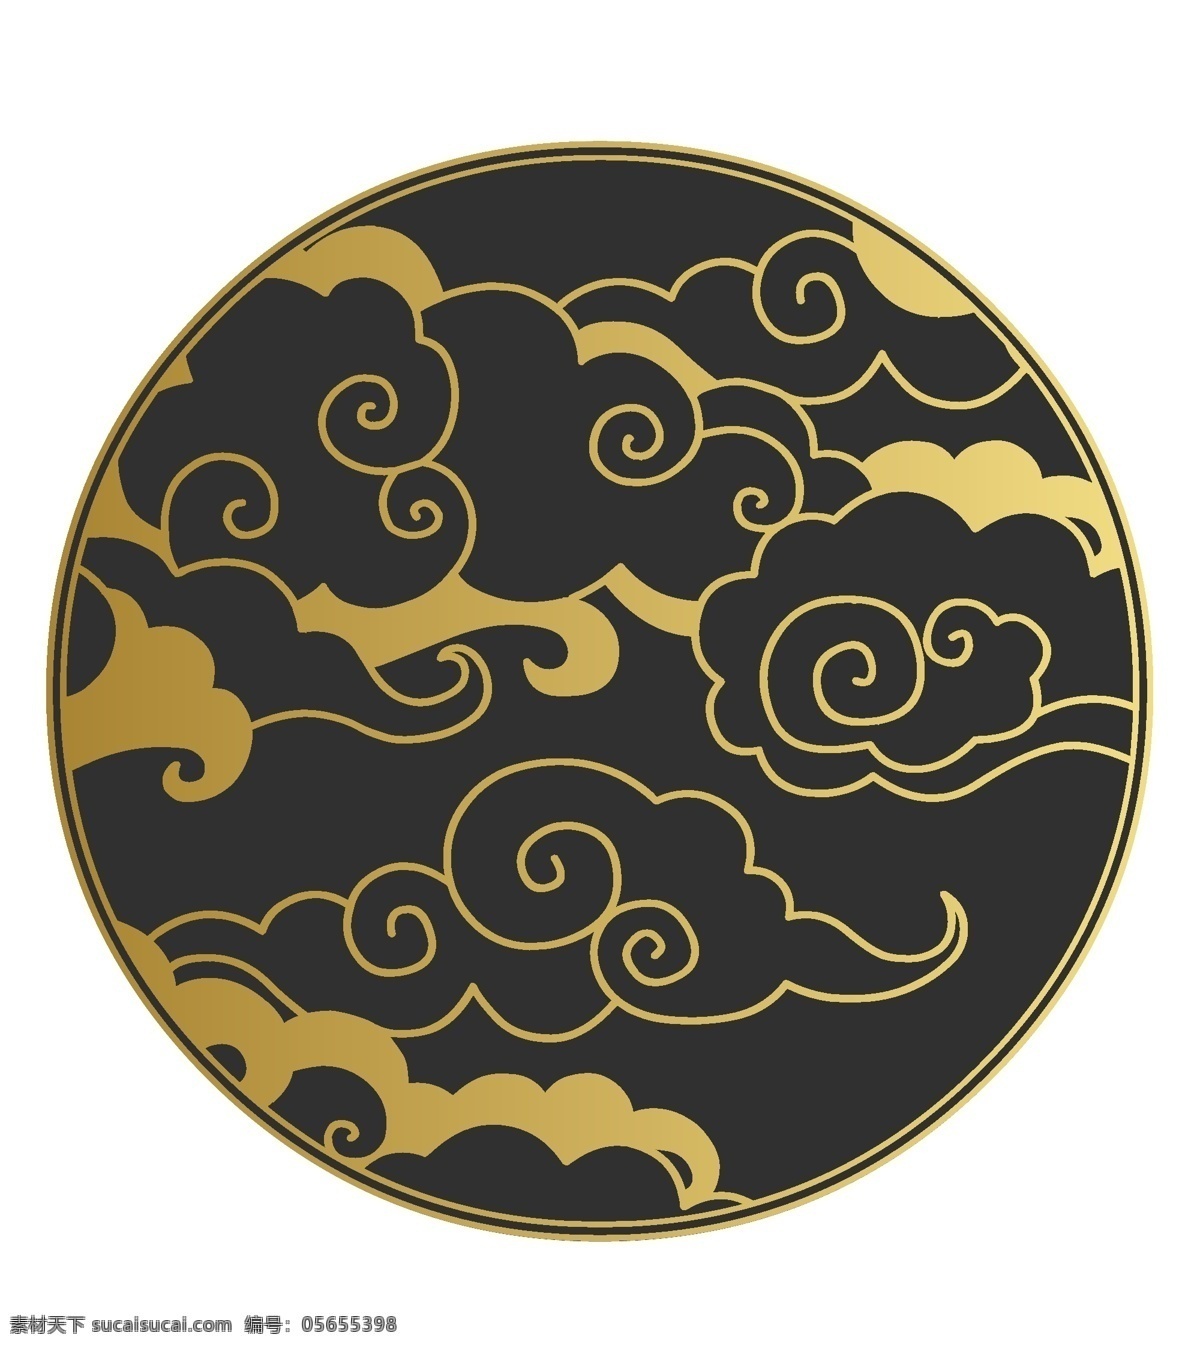 中国 风 创意 花纹 图案 中国风 传统 金色线条 海浪 云纹 圆形 装饰画 简笔 装饰图案 雕刻图案 波纹 文化艺术